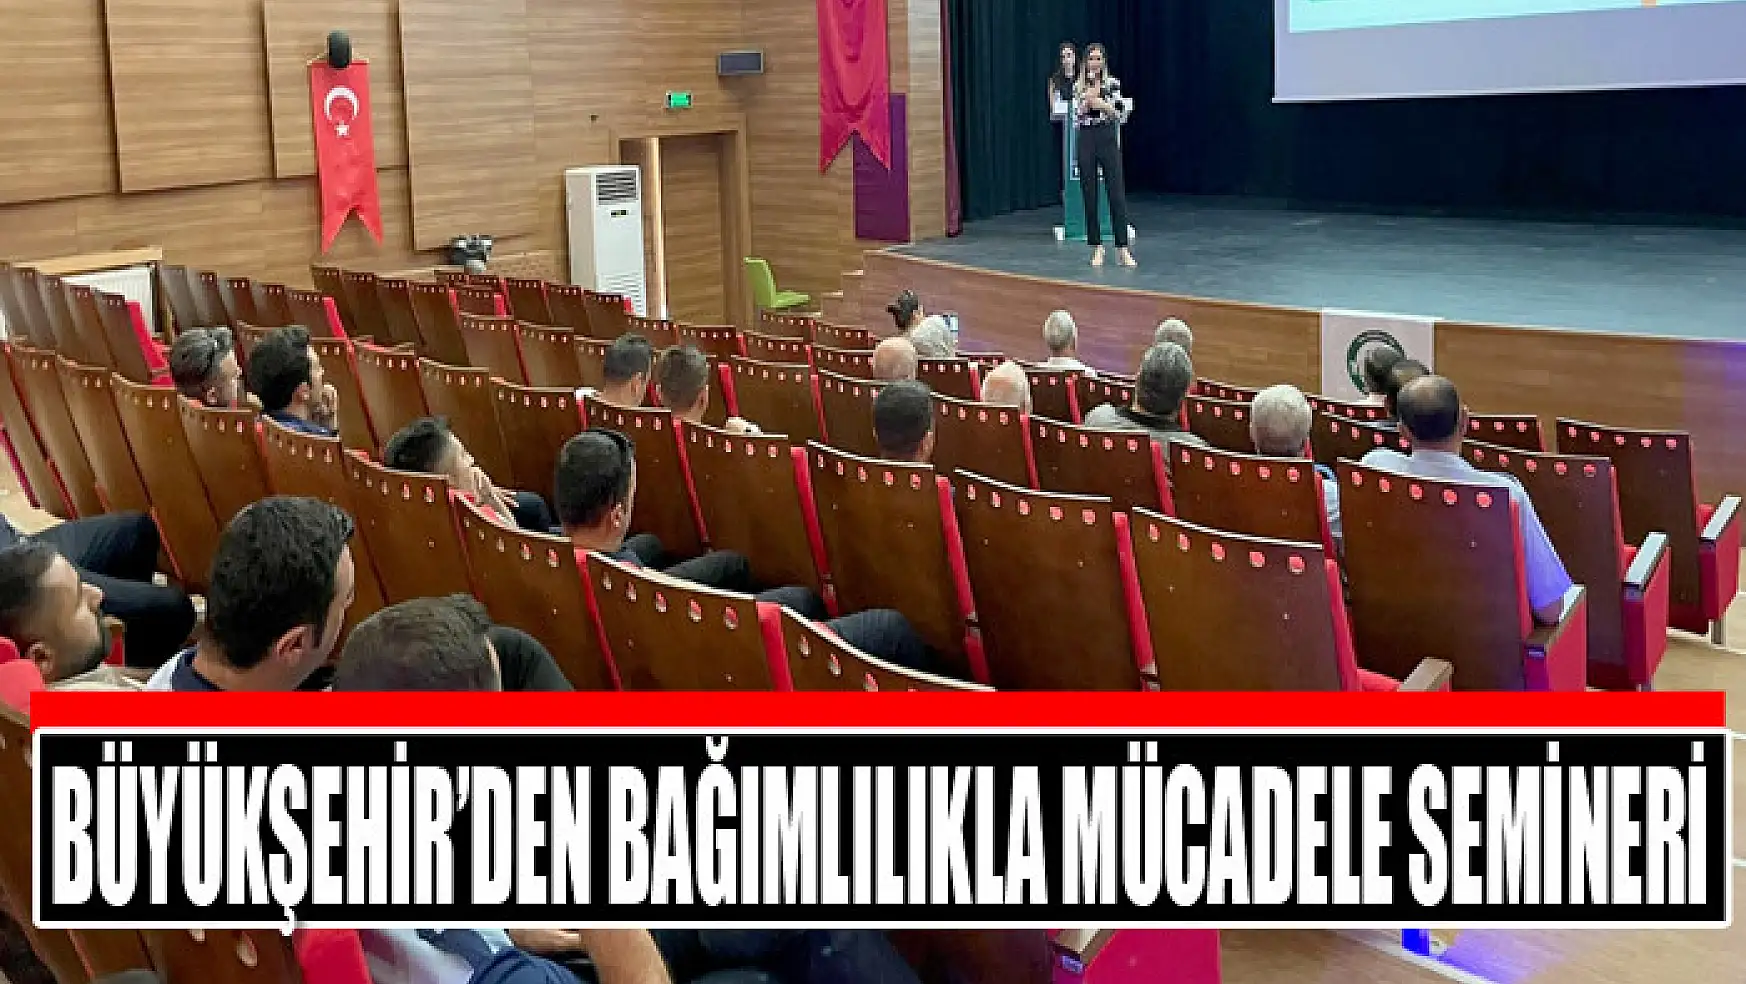 Büyükşehir'den bağımlılıkla mücadele semineri